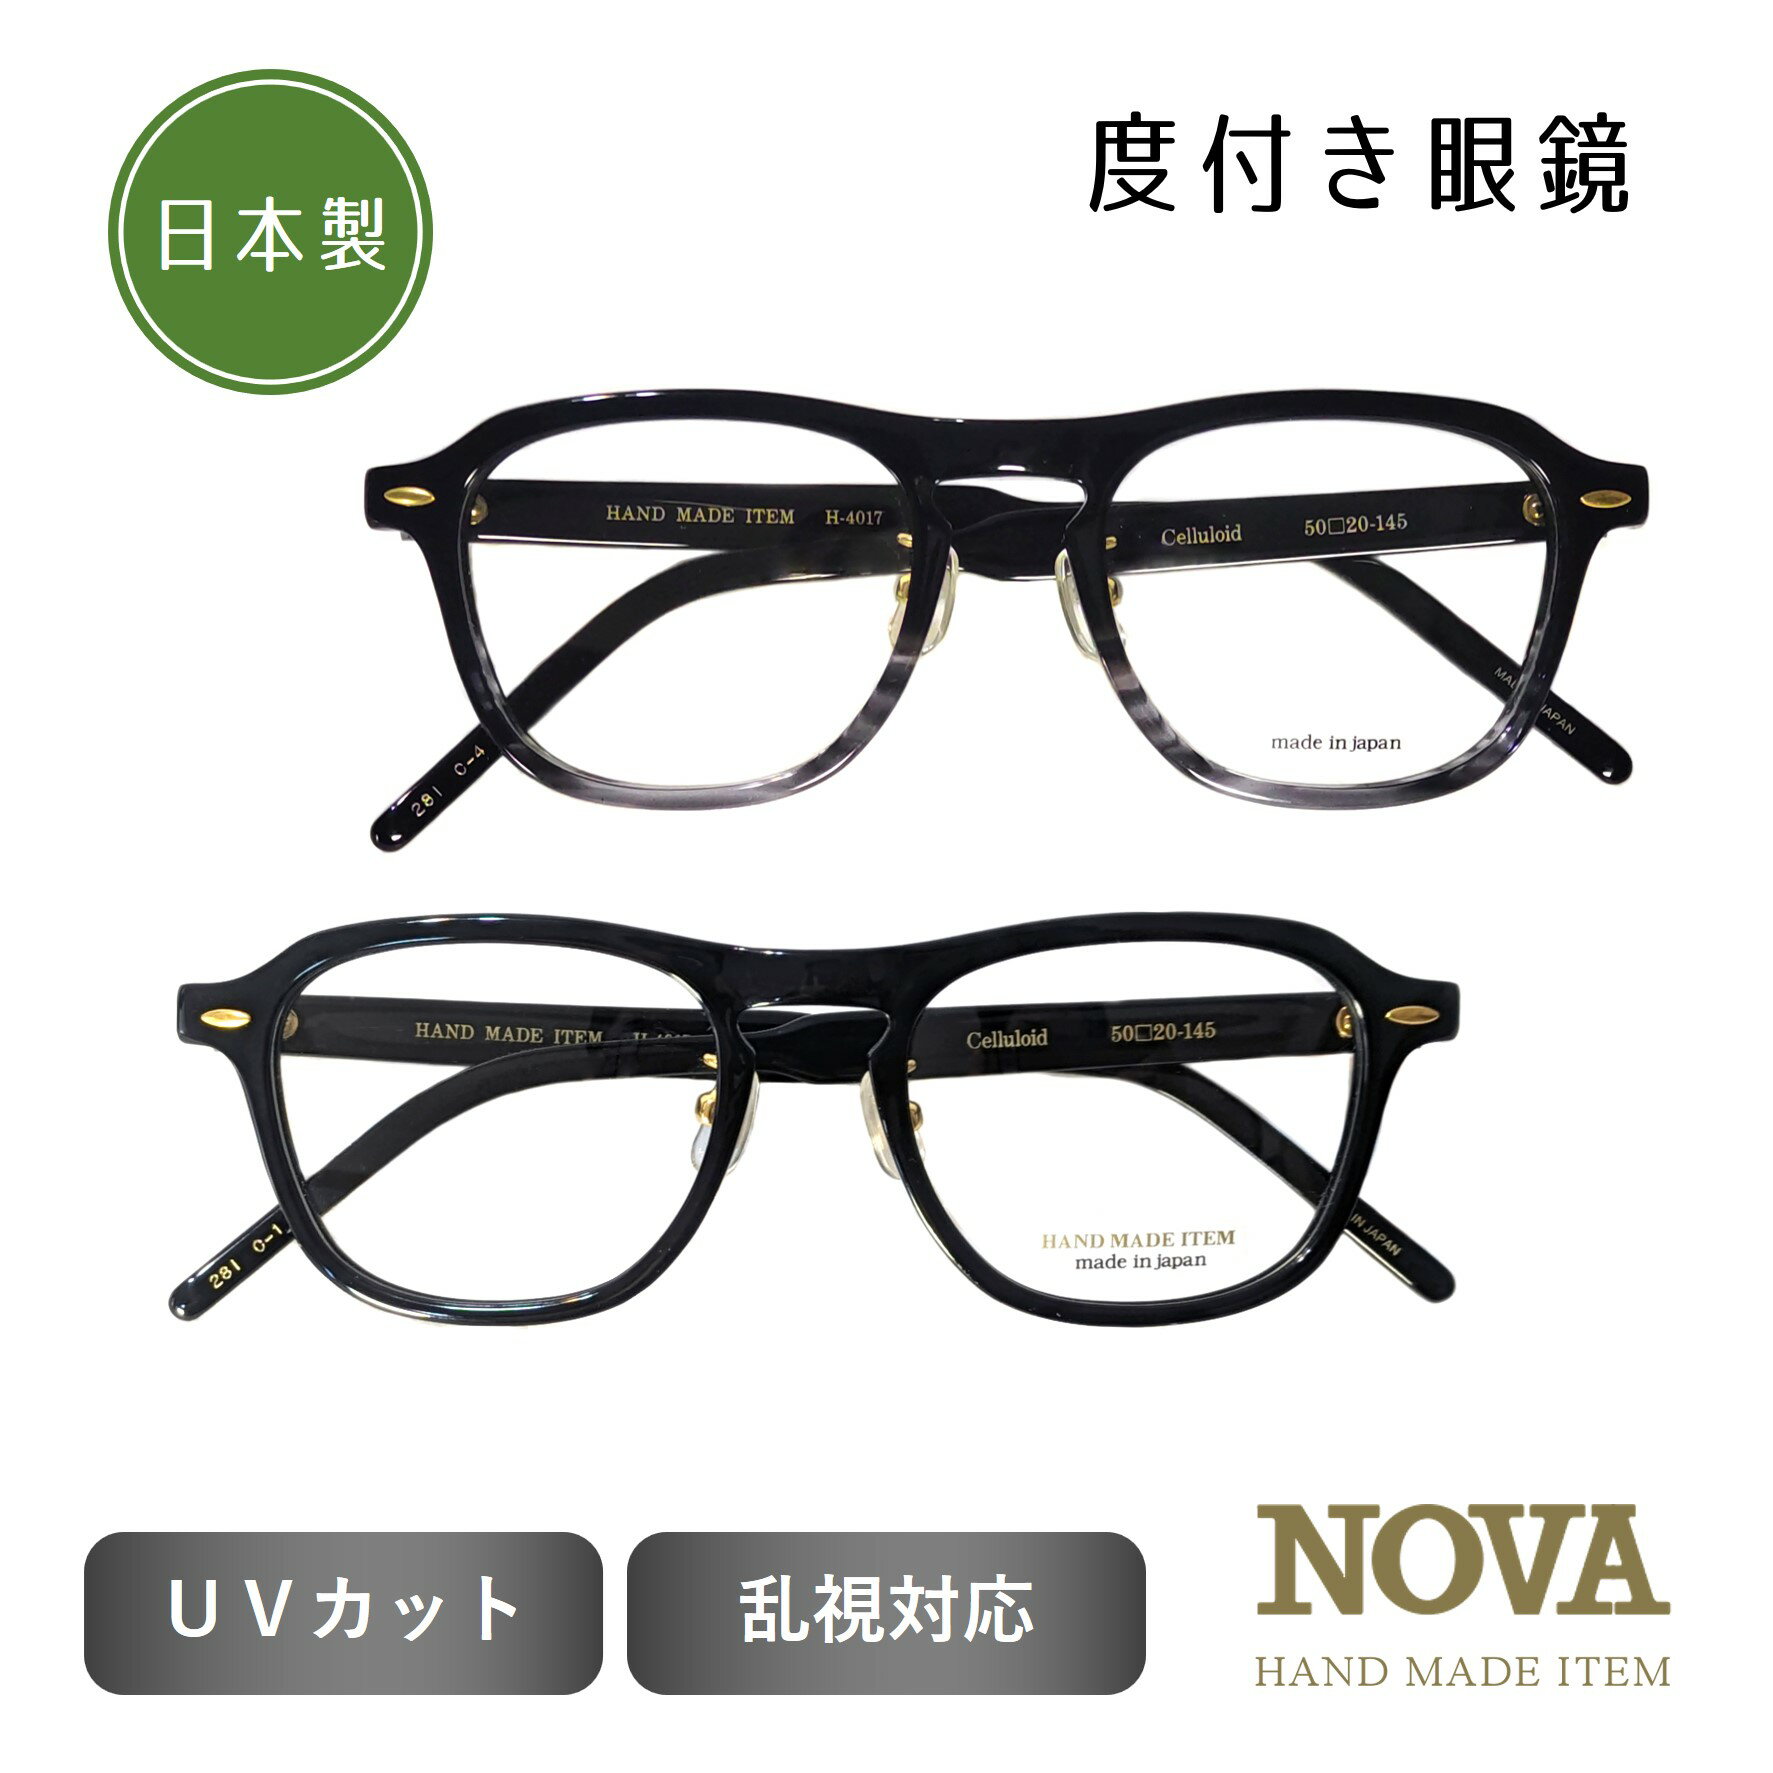 日本製 ハンドメイド 度付き 眼鏡 ブラック グレー made in Japan セル プラスチック 鯖江 ハンドメイド セルロイド 鼻パット クラシック 職人